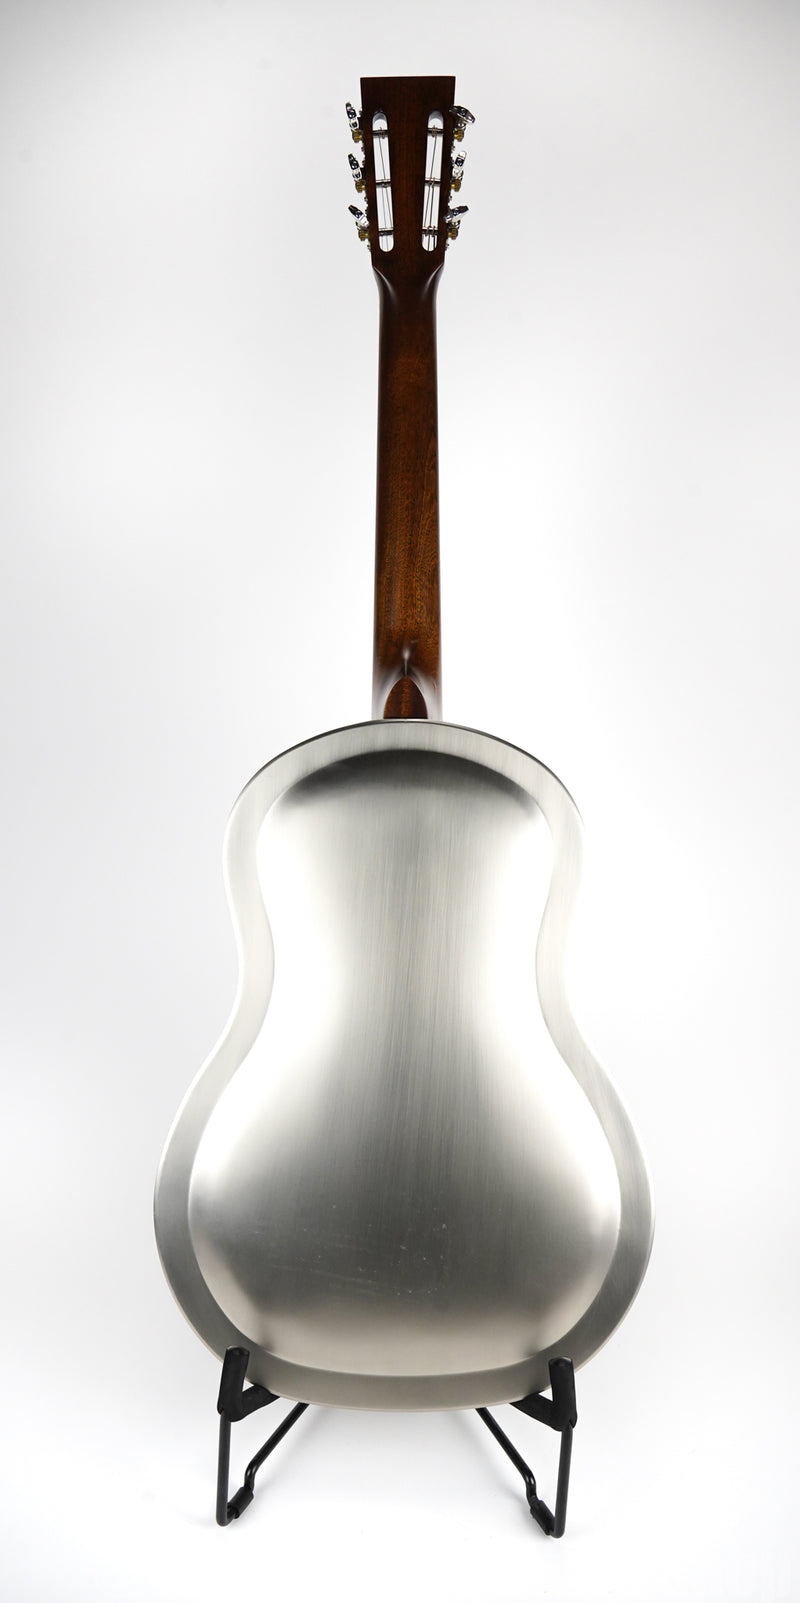 Regal RC-43 Metal Body Triolian Resonator Guitar – Antiqued Nickel-Plated Steel